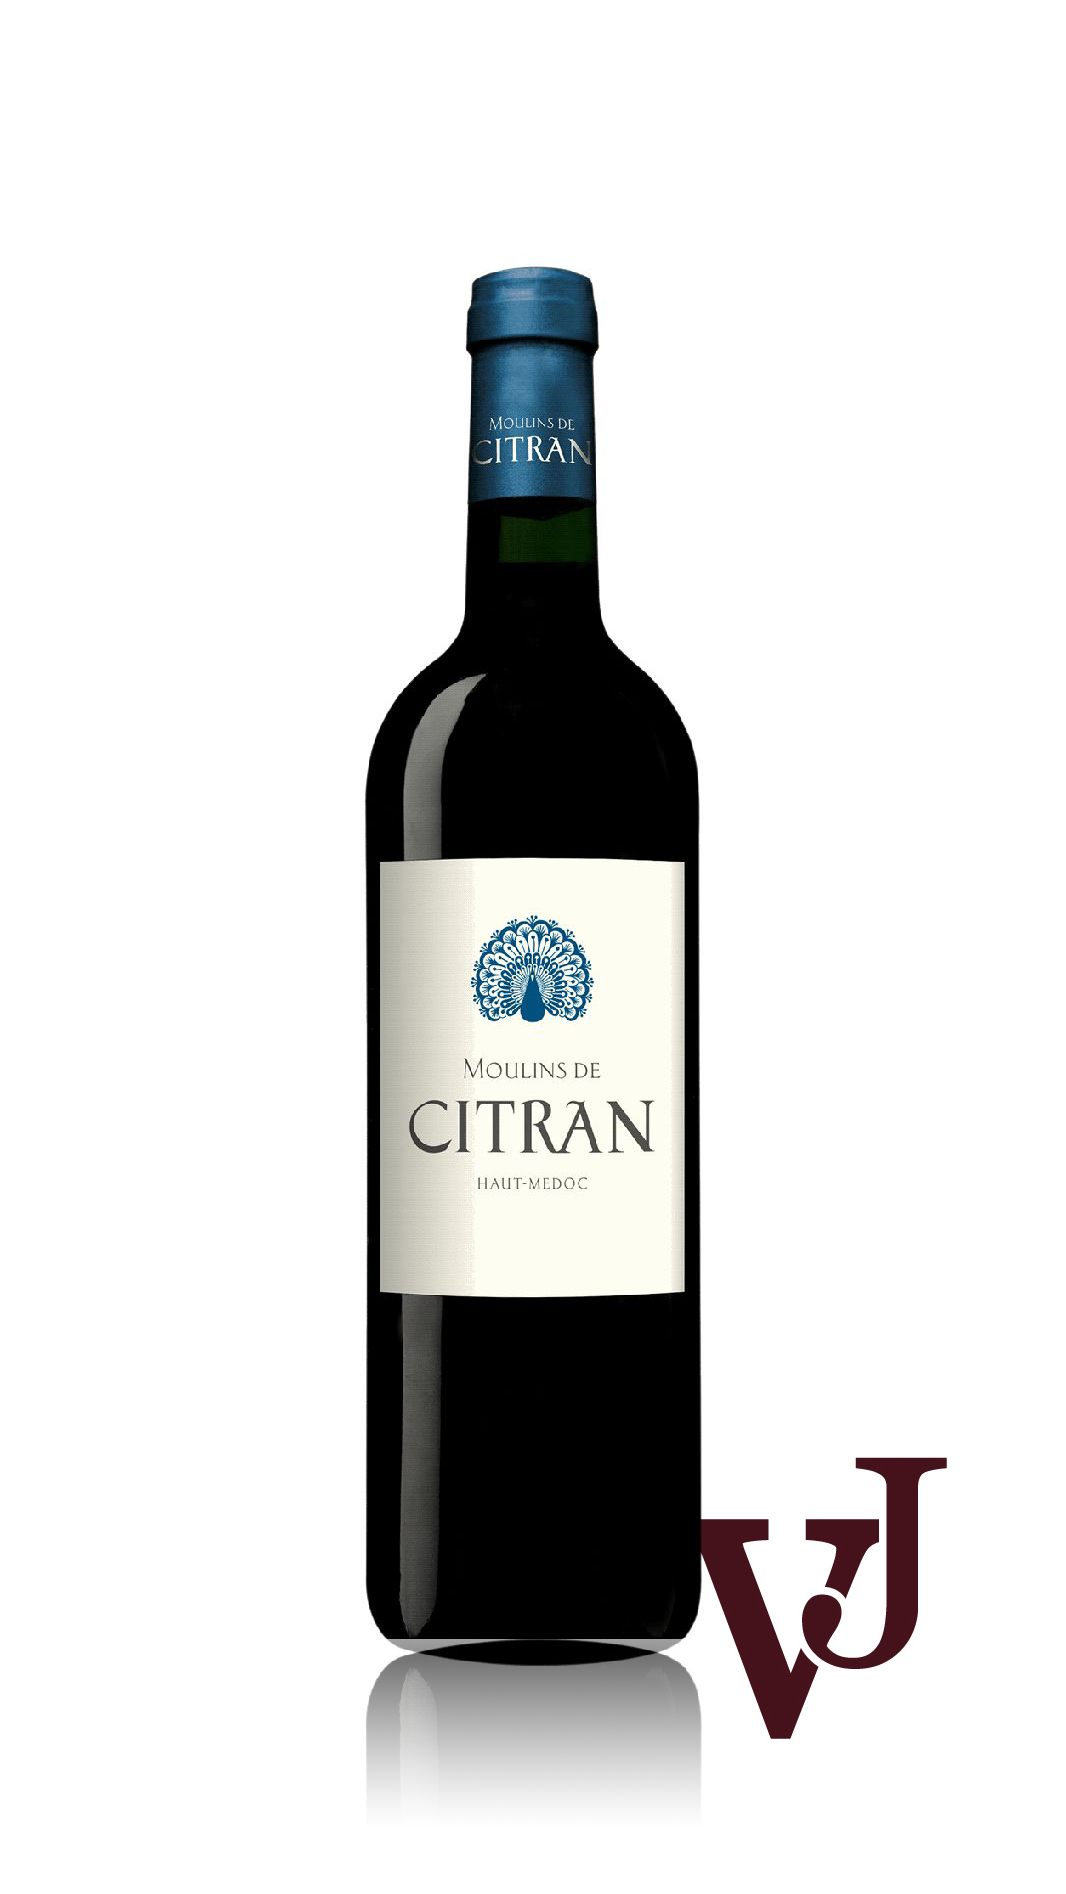 Rött Vin - Moulins de Citran 2012 artikel nummer 7661301 från producenten Les Grands Chais de France från området Frankrike